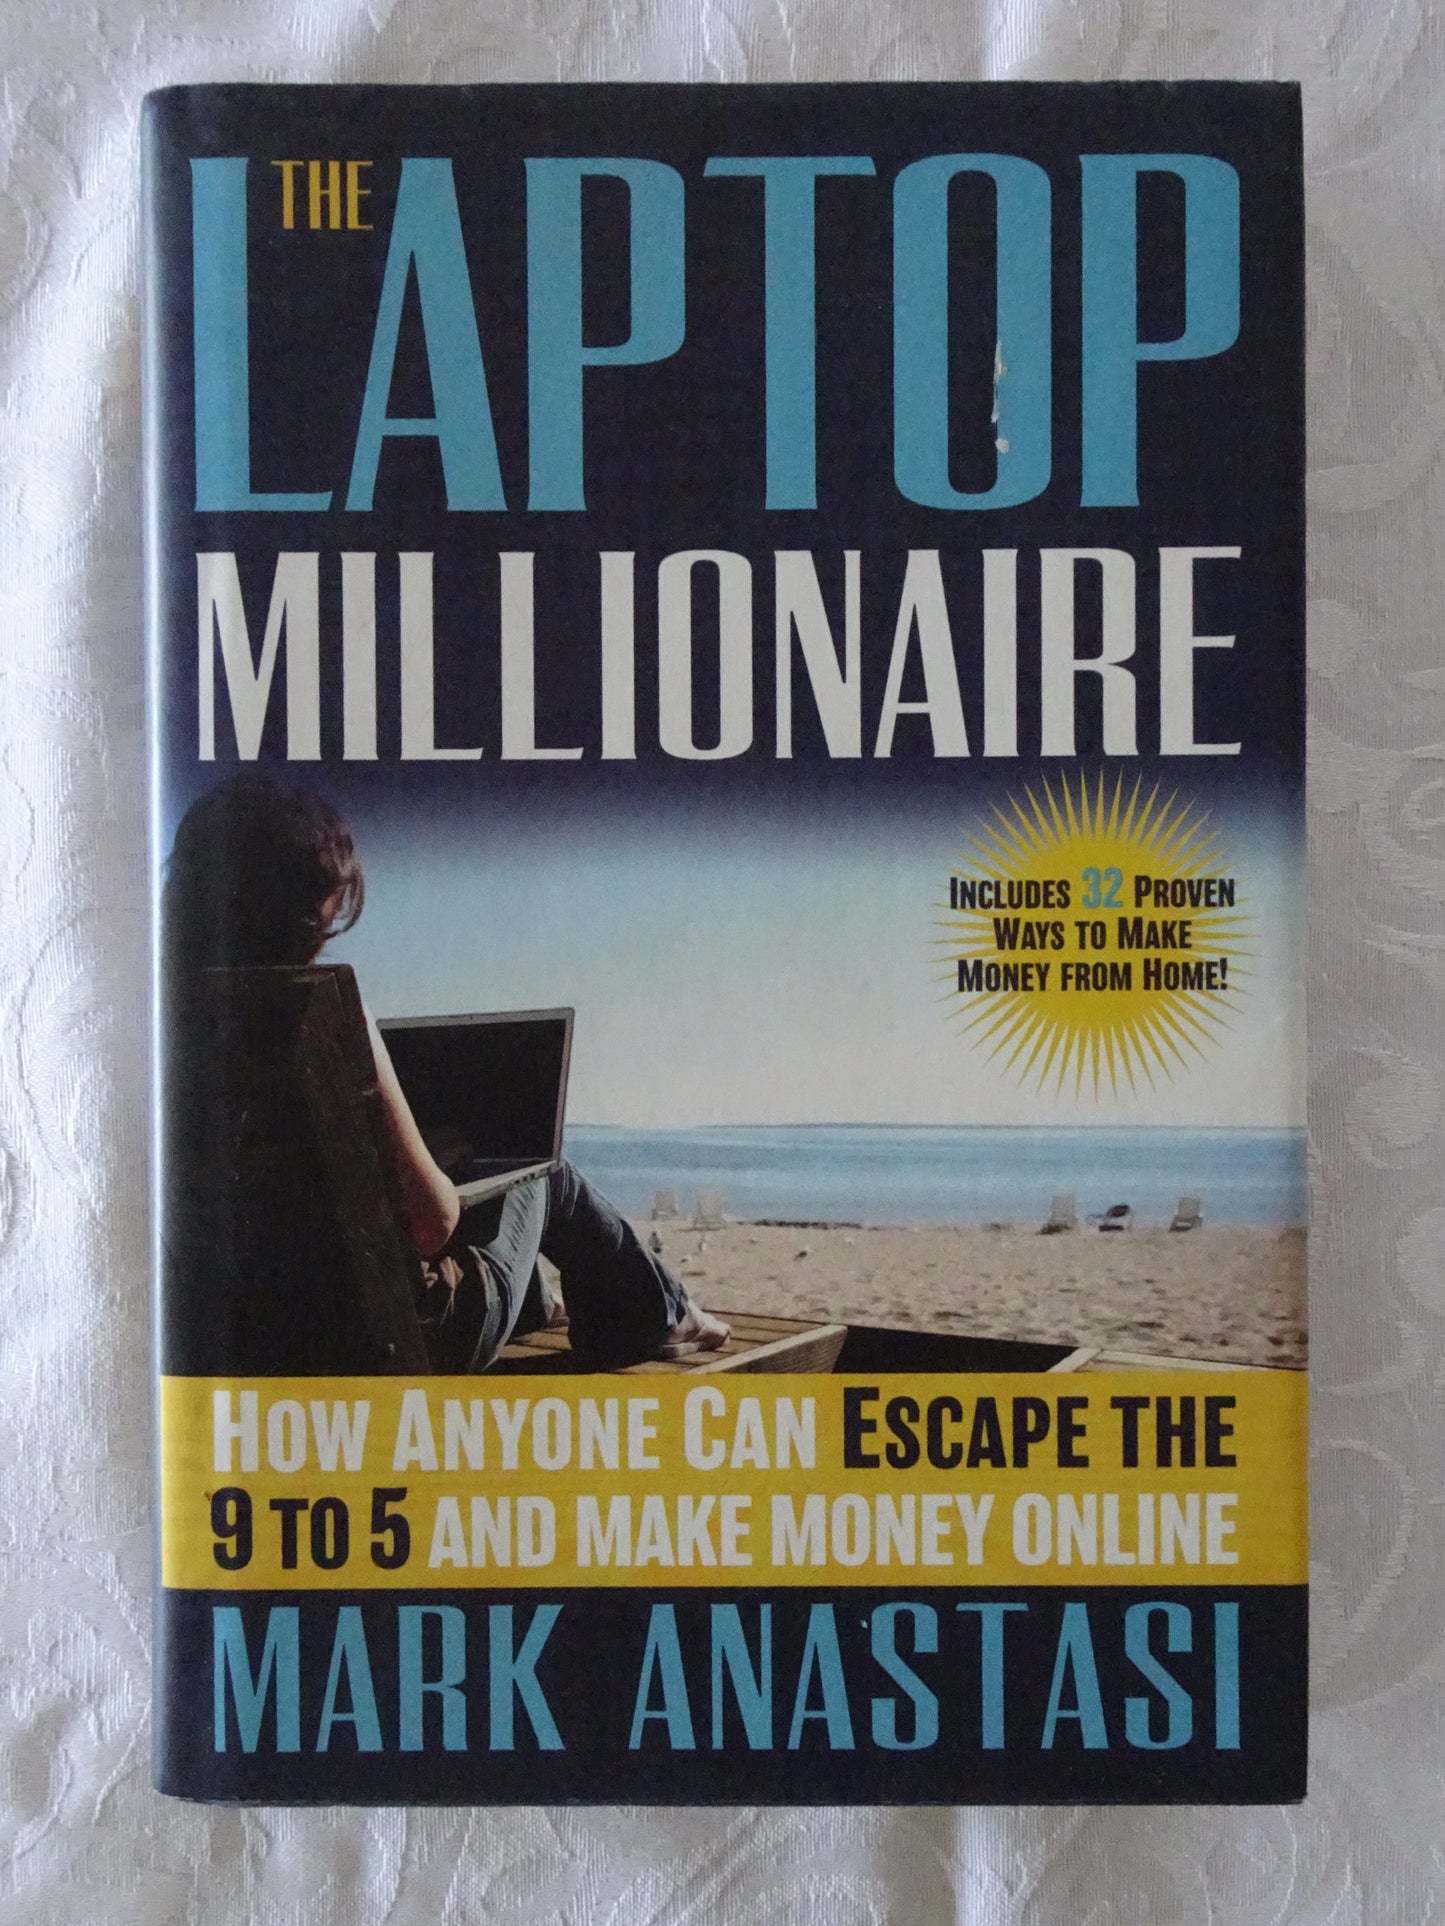 The Laptop Millionaire by Mark Anastasi